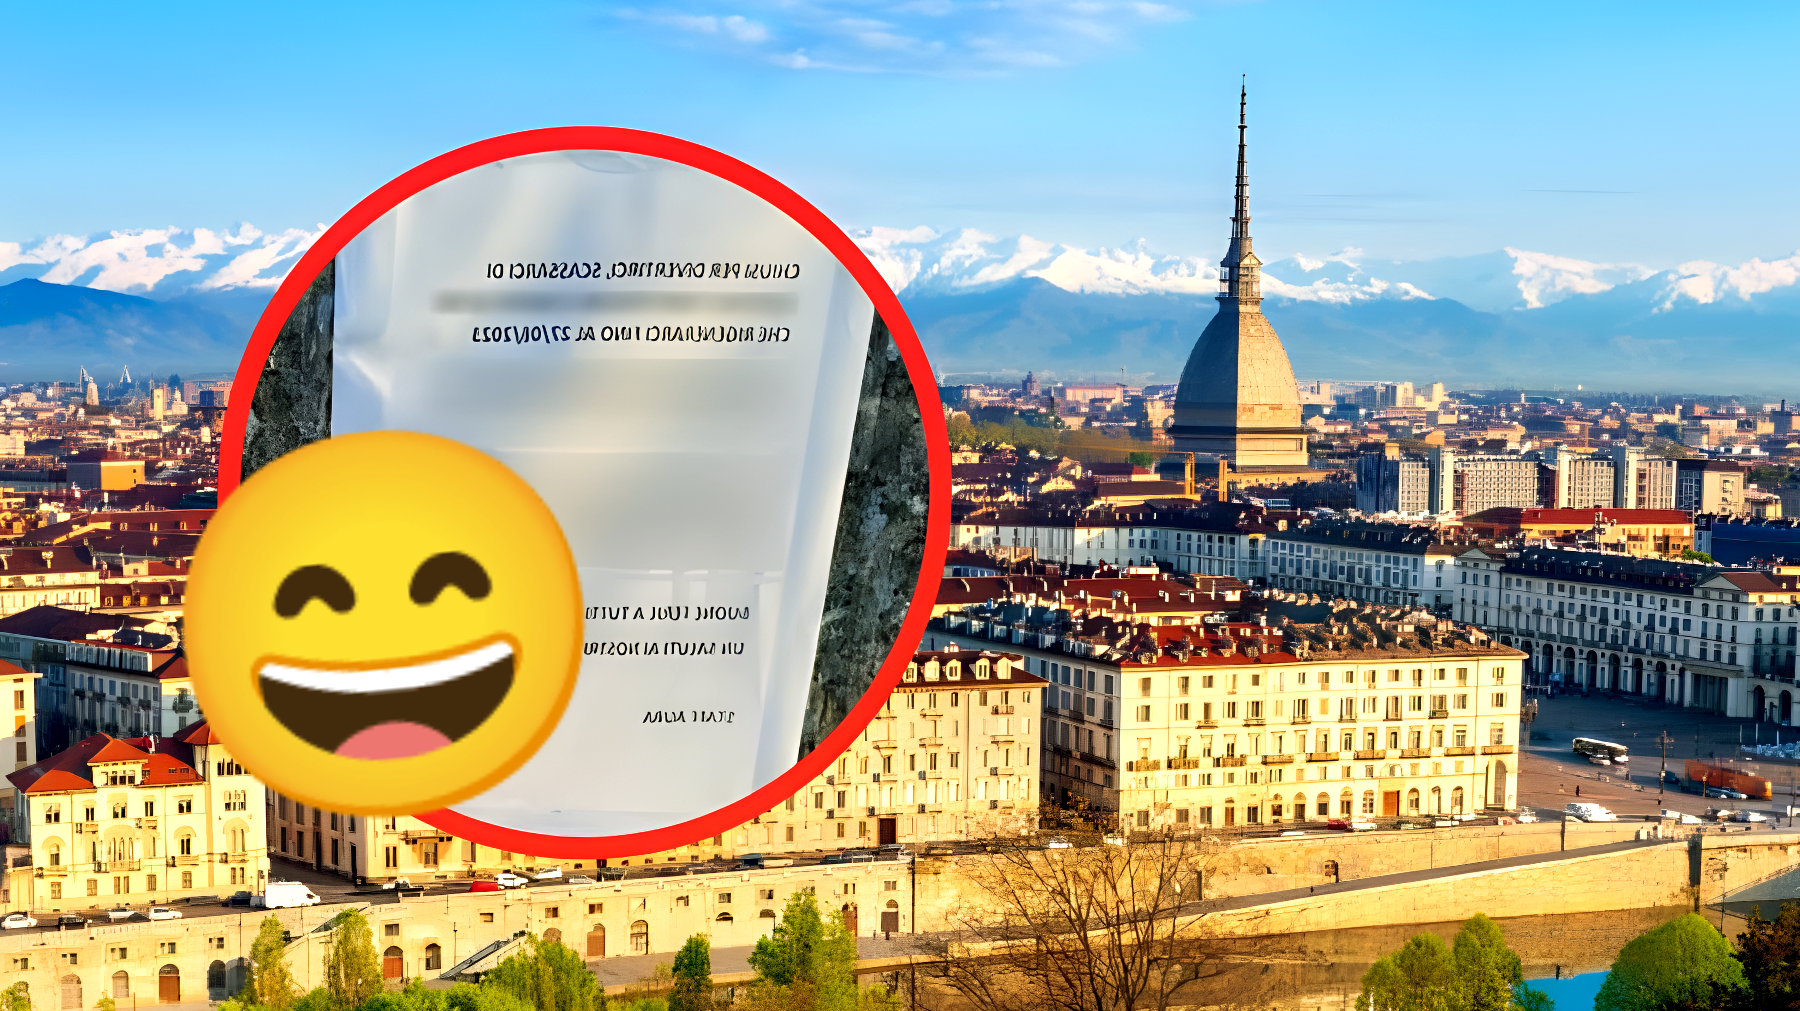 Negozio di Torino chiude per ferie: il misterioso annuncio che fa tremare i clienti